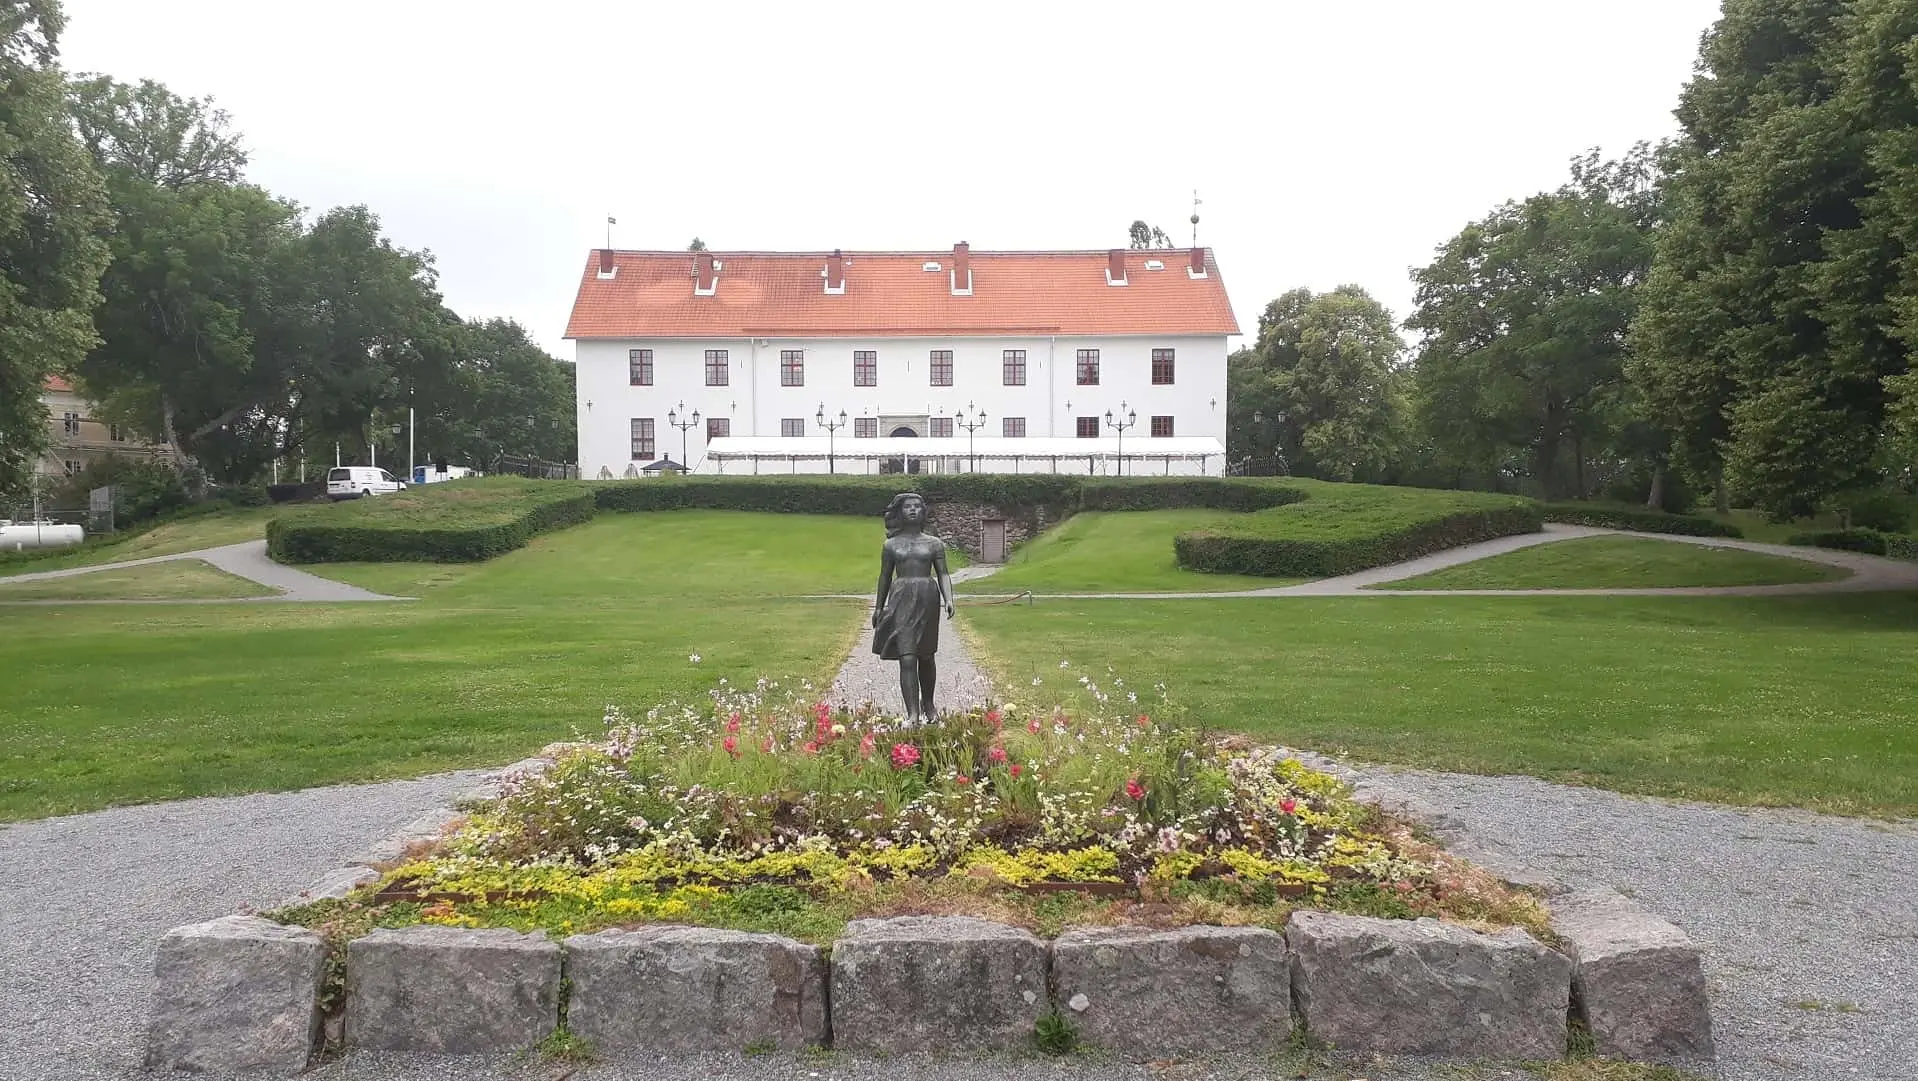 Blommor och staty med gräsmatta och vit slottsbyggnad i bakgrunden.